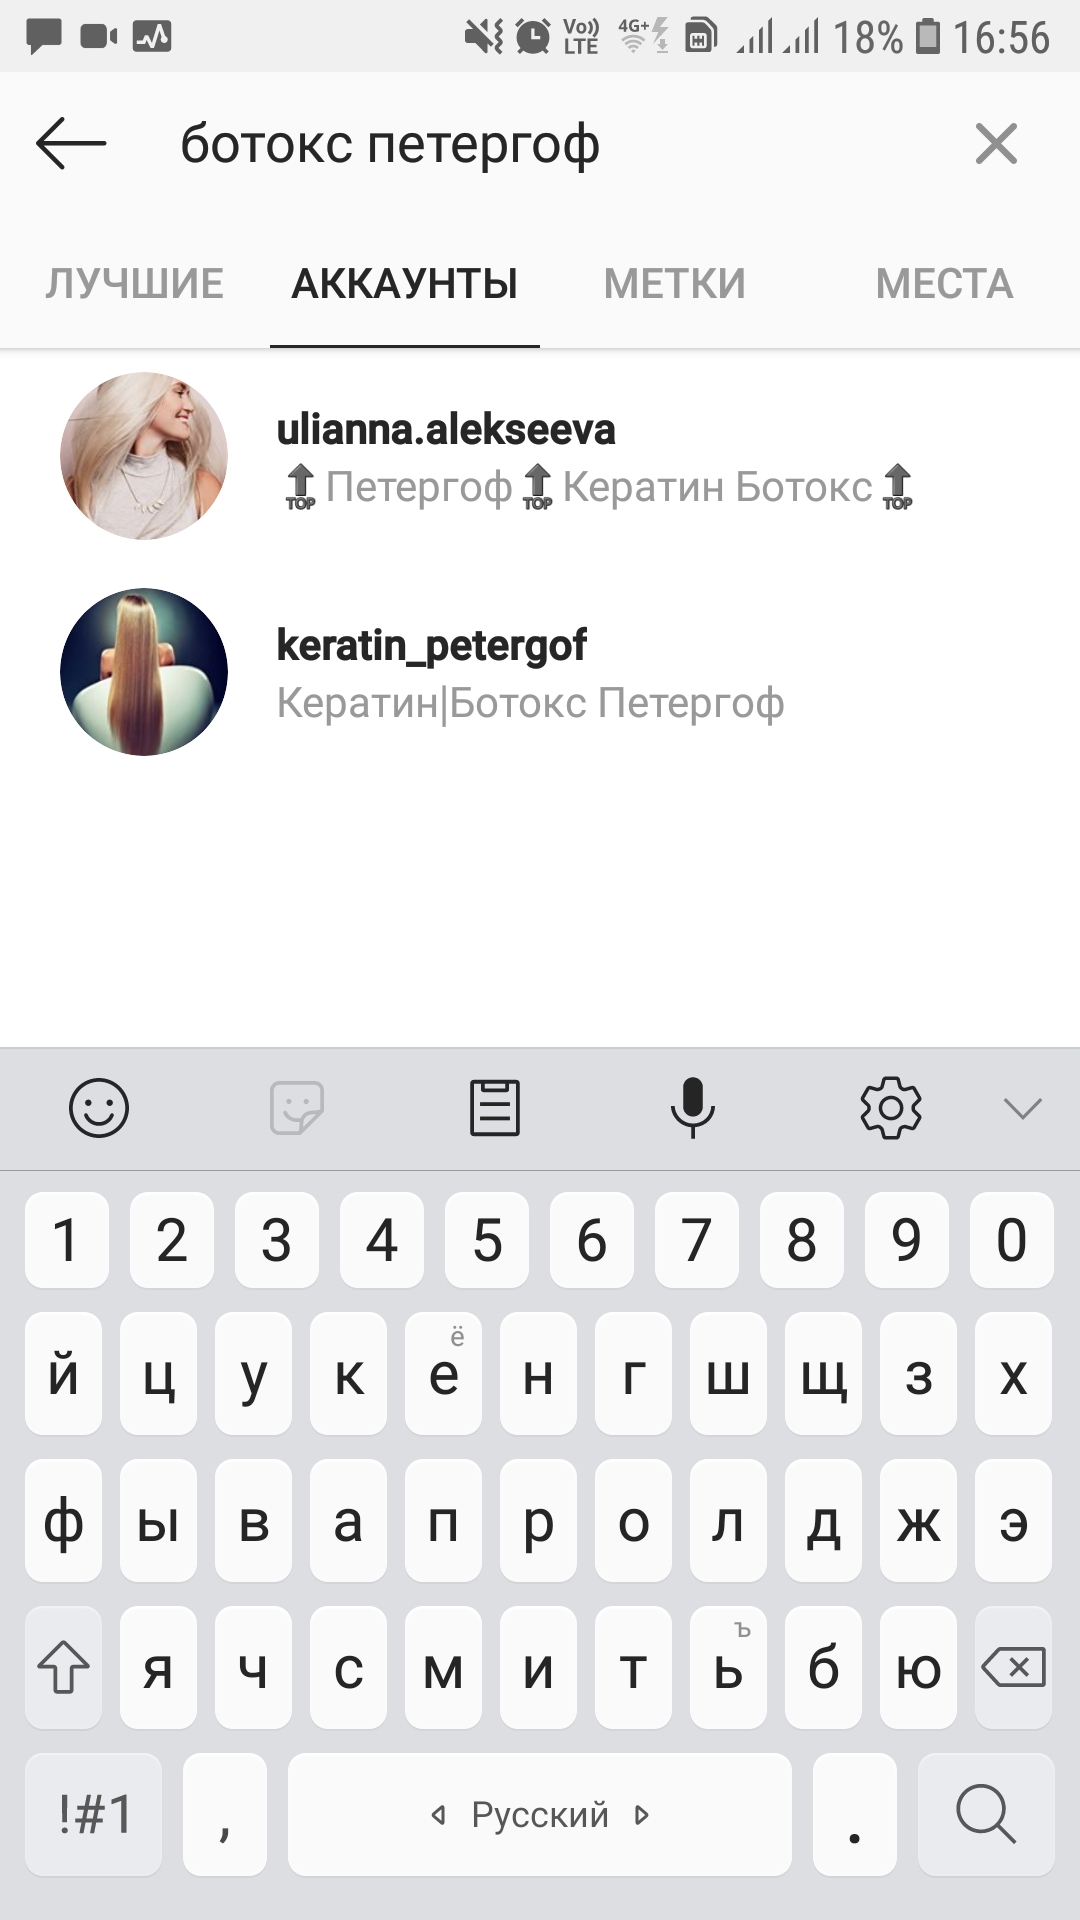 Нужна помощь с шапкой профиля, Ulianna_spb, 9 июл 2019, 20:22, Screenshot_20190709-165632_Instagram.jpg